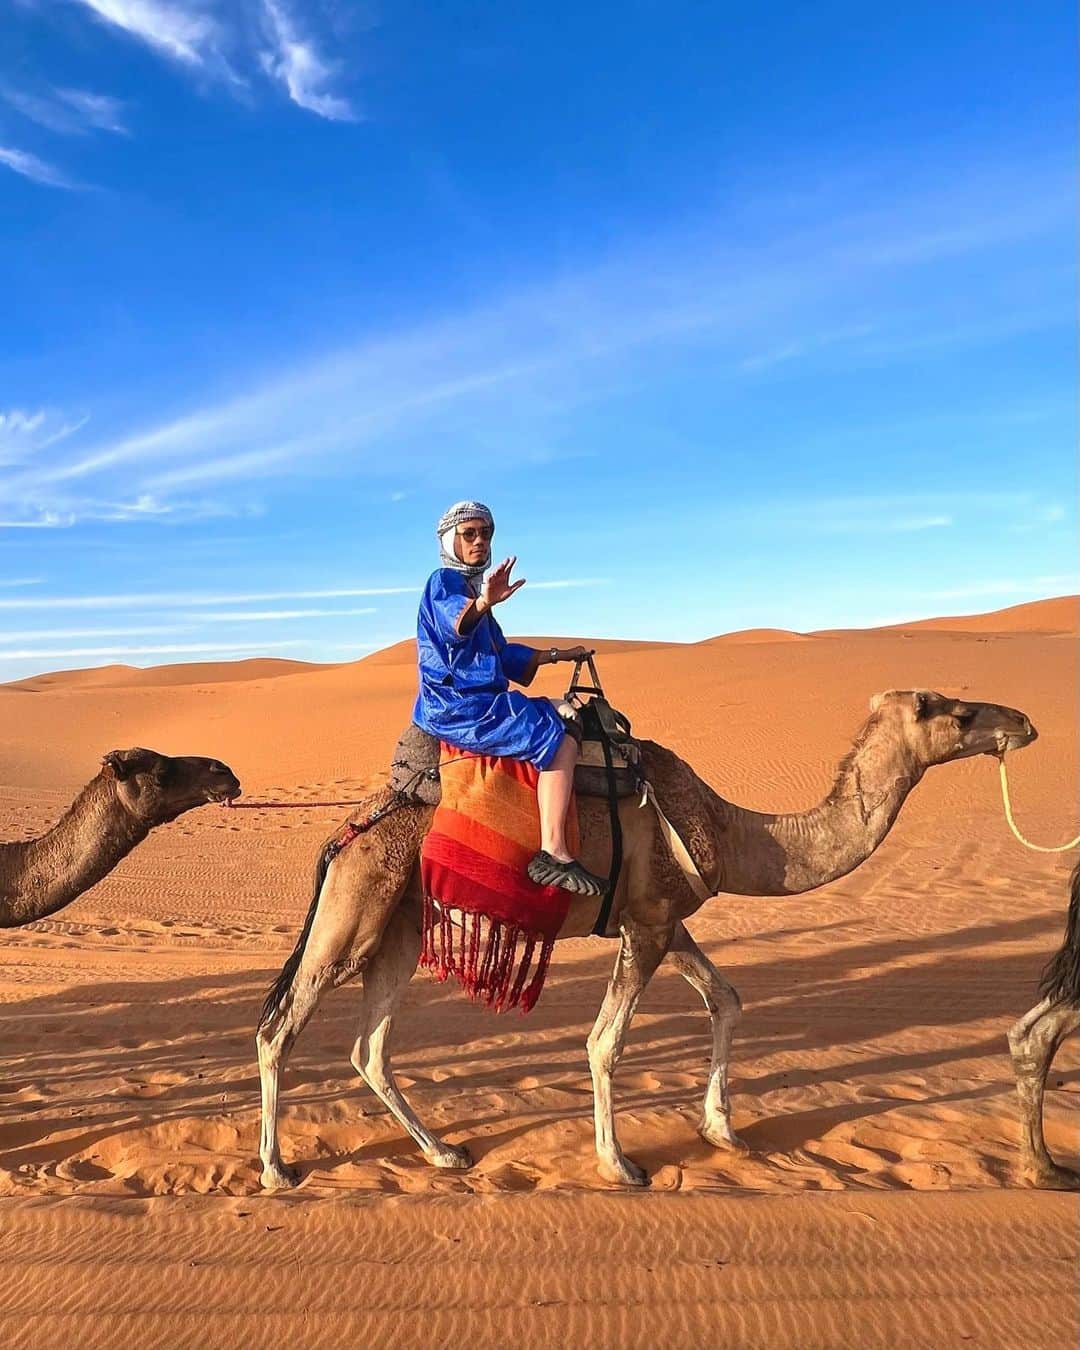 出井直助のインスタグラム：「. 🇲🇦モロッコ・サハラ砂漠🇲🇦  今日はラクダに乗って、 【サハラ砂漠】を移動しました🐫🏜  ラクダに乗って移動するより、 歩いたほうが早いのではないか？と思っていましたが、 サハラ砂漠は砂がかなりサラサラで歩きにくかったので、 ラクダで移動する意味がわかりました。 🐫さんありがとう。 #モロッコ #サハラ砂漠 #砂漠 #ラクダ #海外旅行  #ヴィヴァン #vivant  #camel #camelride #morocco #moroccotravel #saharadesert #desert」